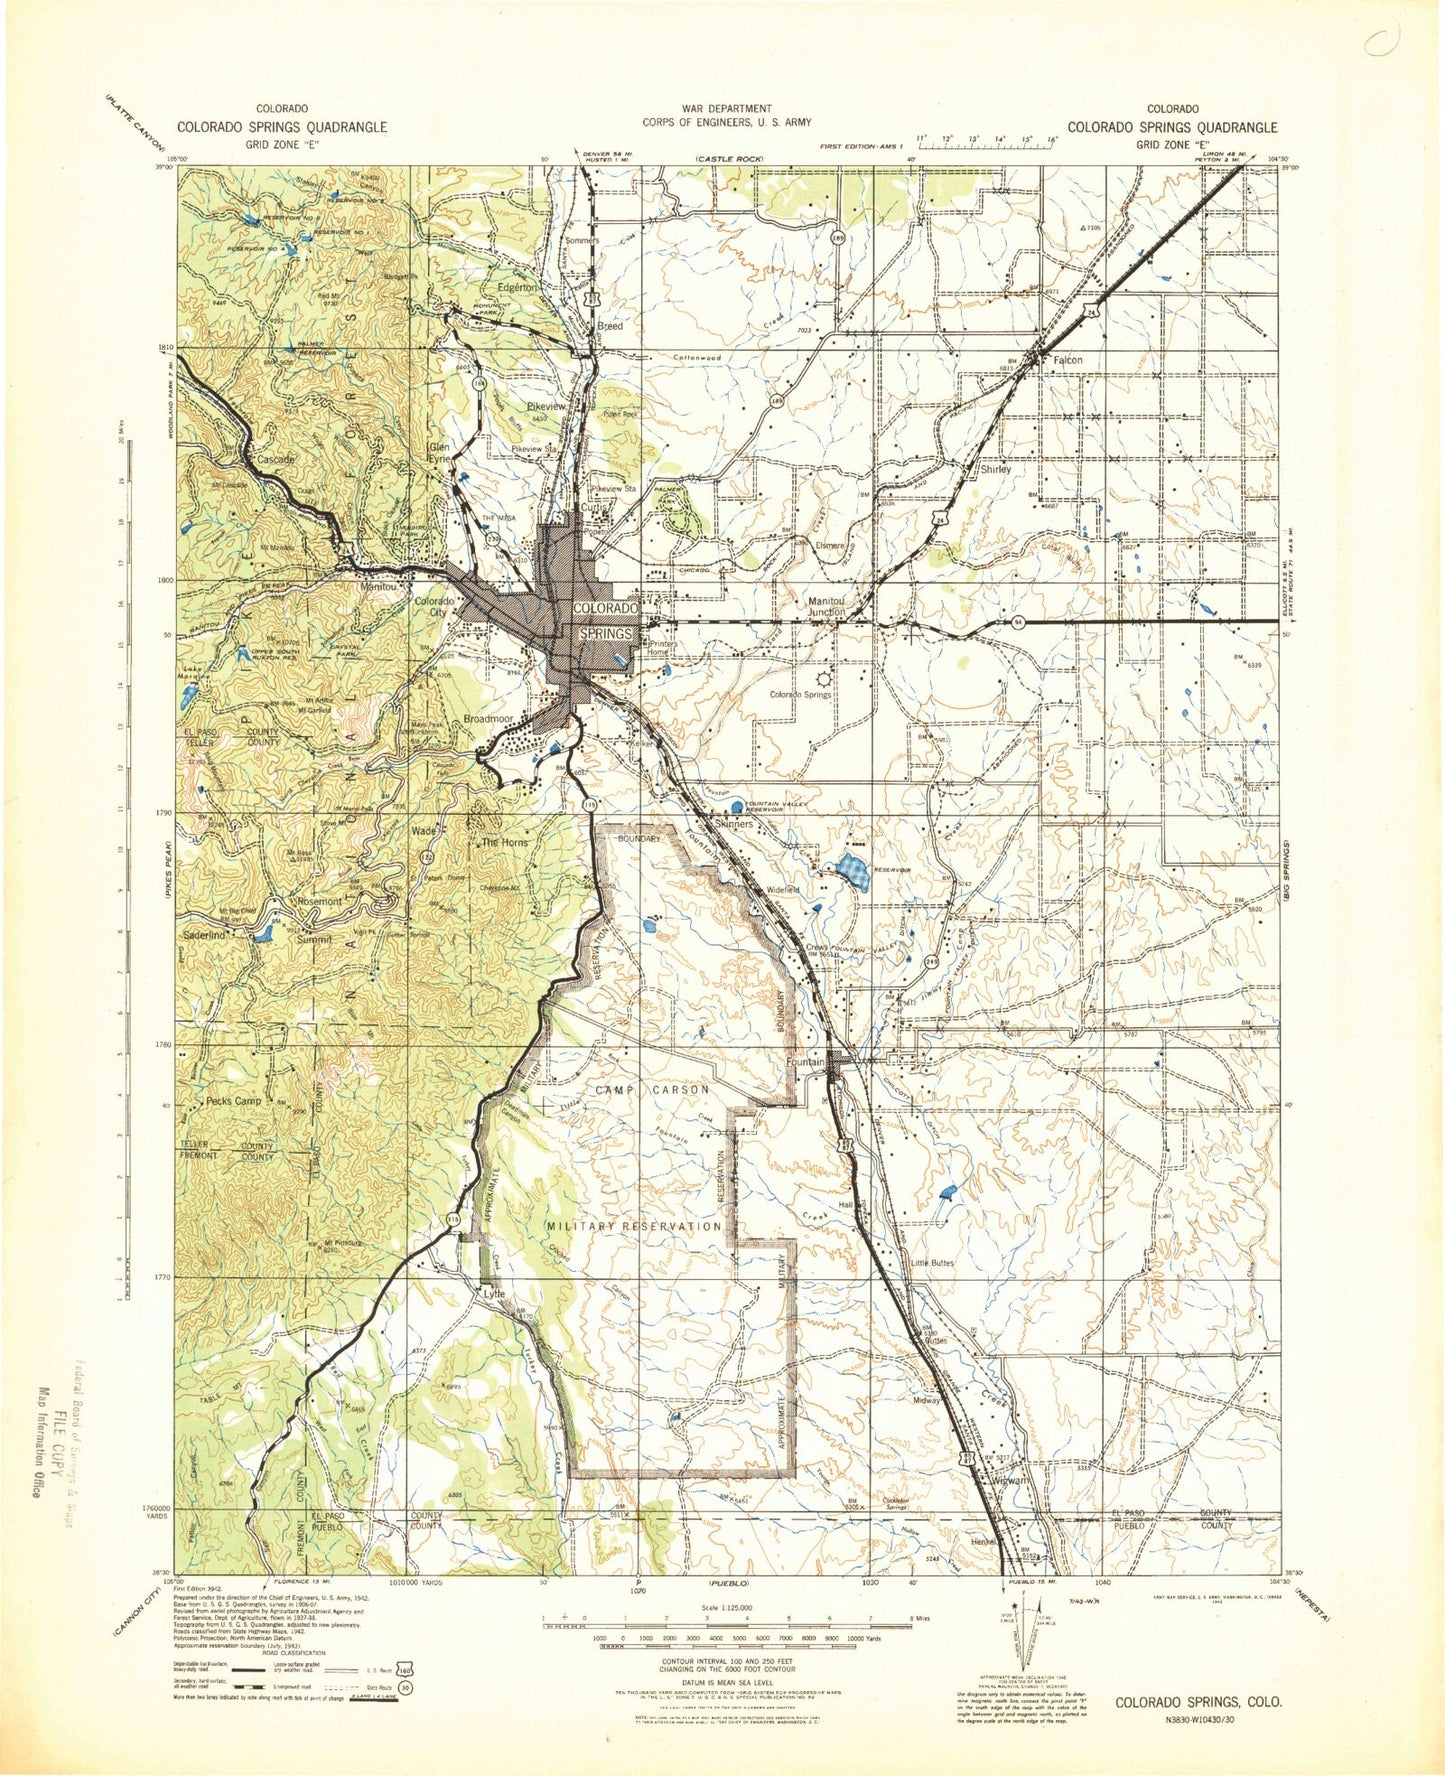 Historic 1942 Colorado Springs Colorado 30'x30' Topo Map Image